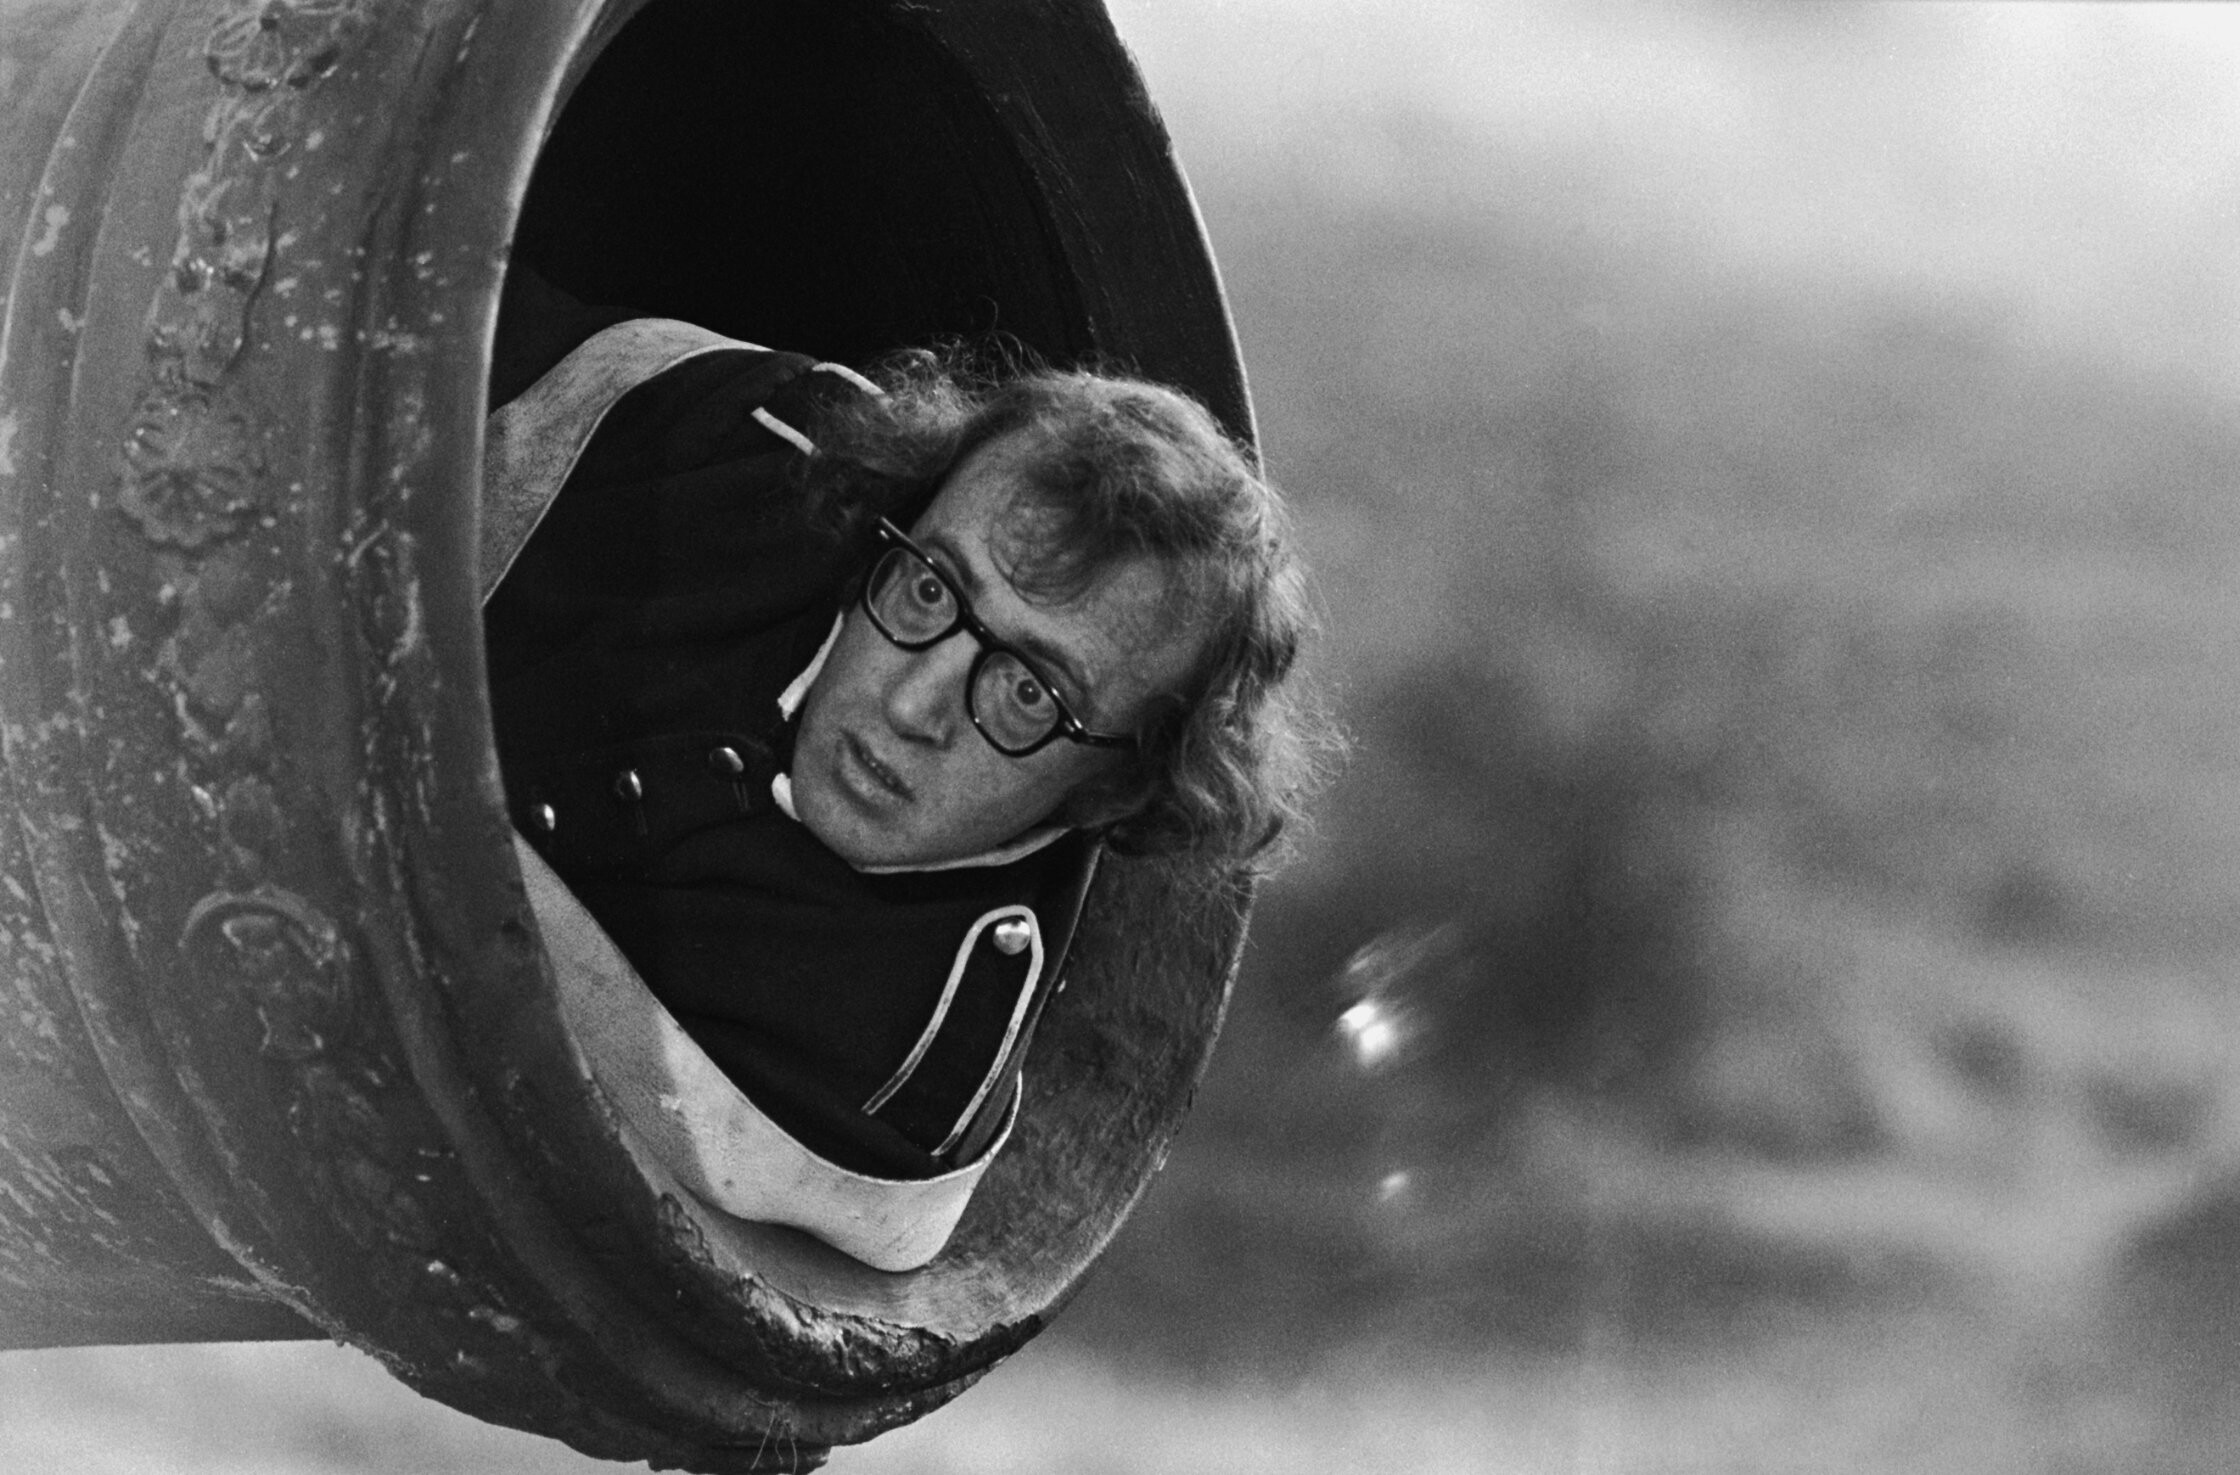 Вуди Аллен готовится к выстрелу из пушки на съёмках комедии Любовь и смерть в ноябре 1974 года. Фотограф Эрнст Хаас